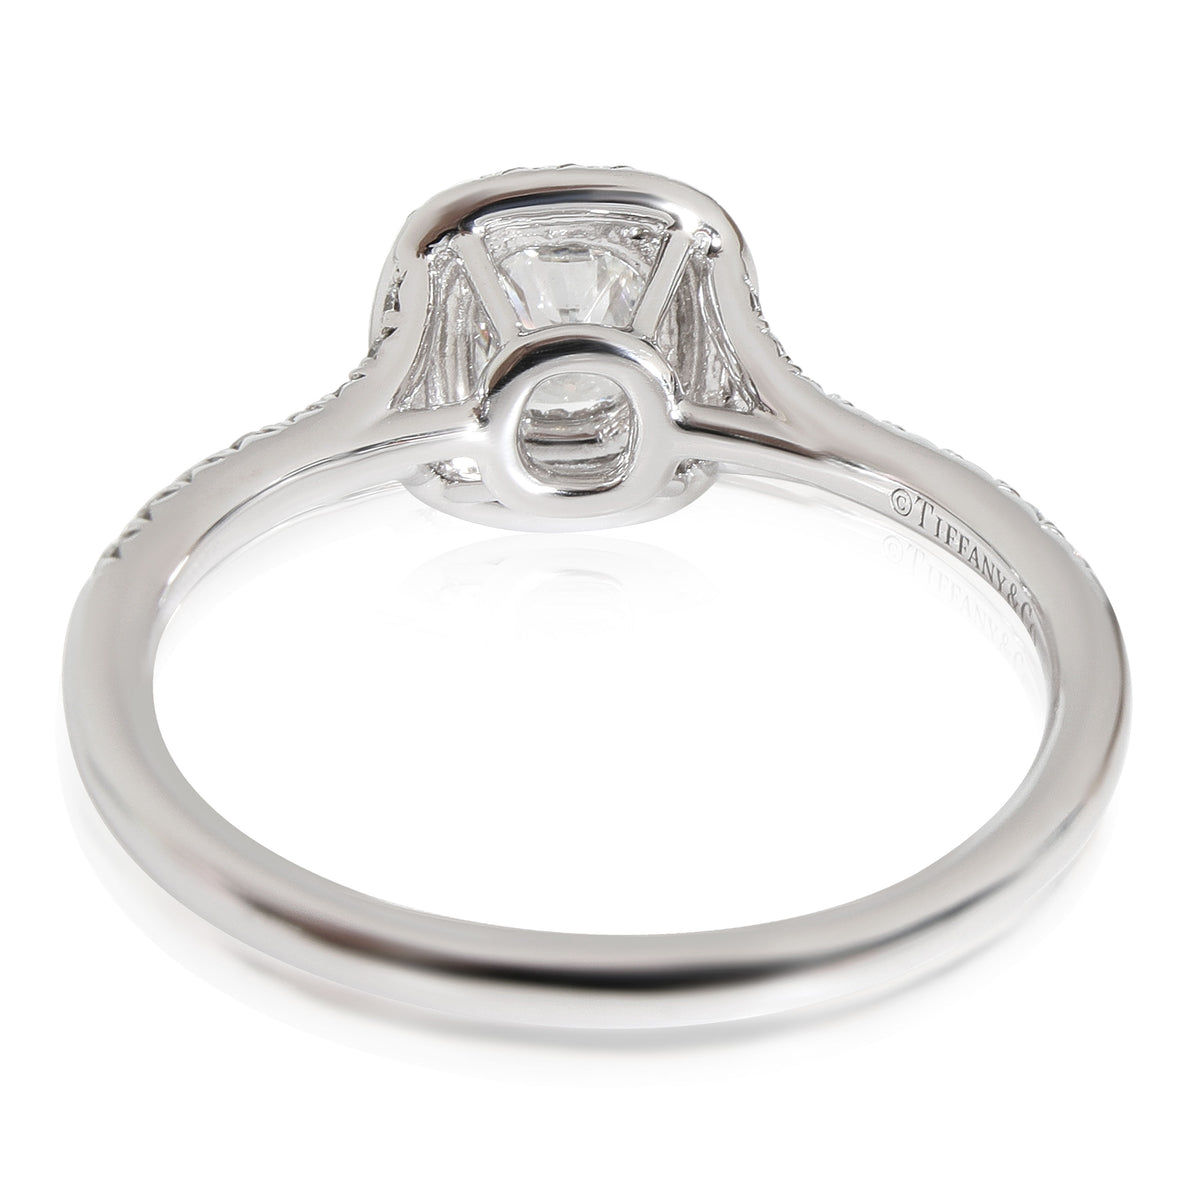 Tiffany & Co. Soleste Diamond Engagement Ring in Platinum F VS1 0.80 ctw